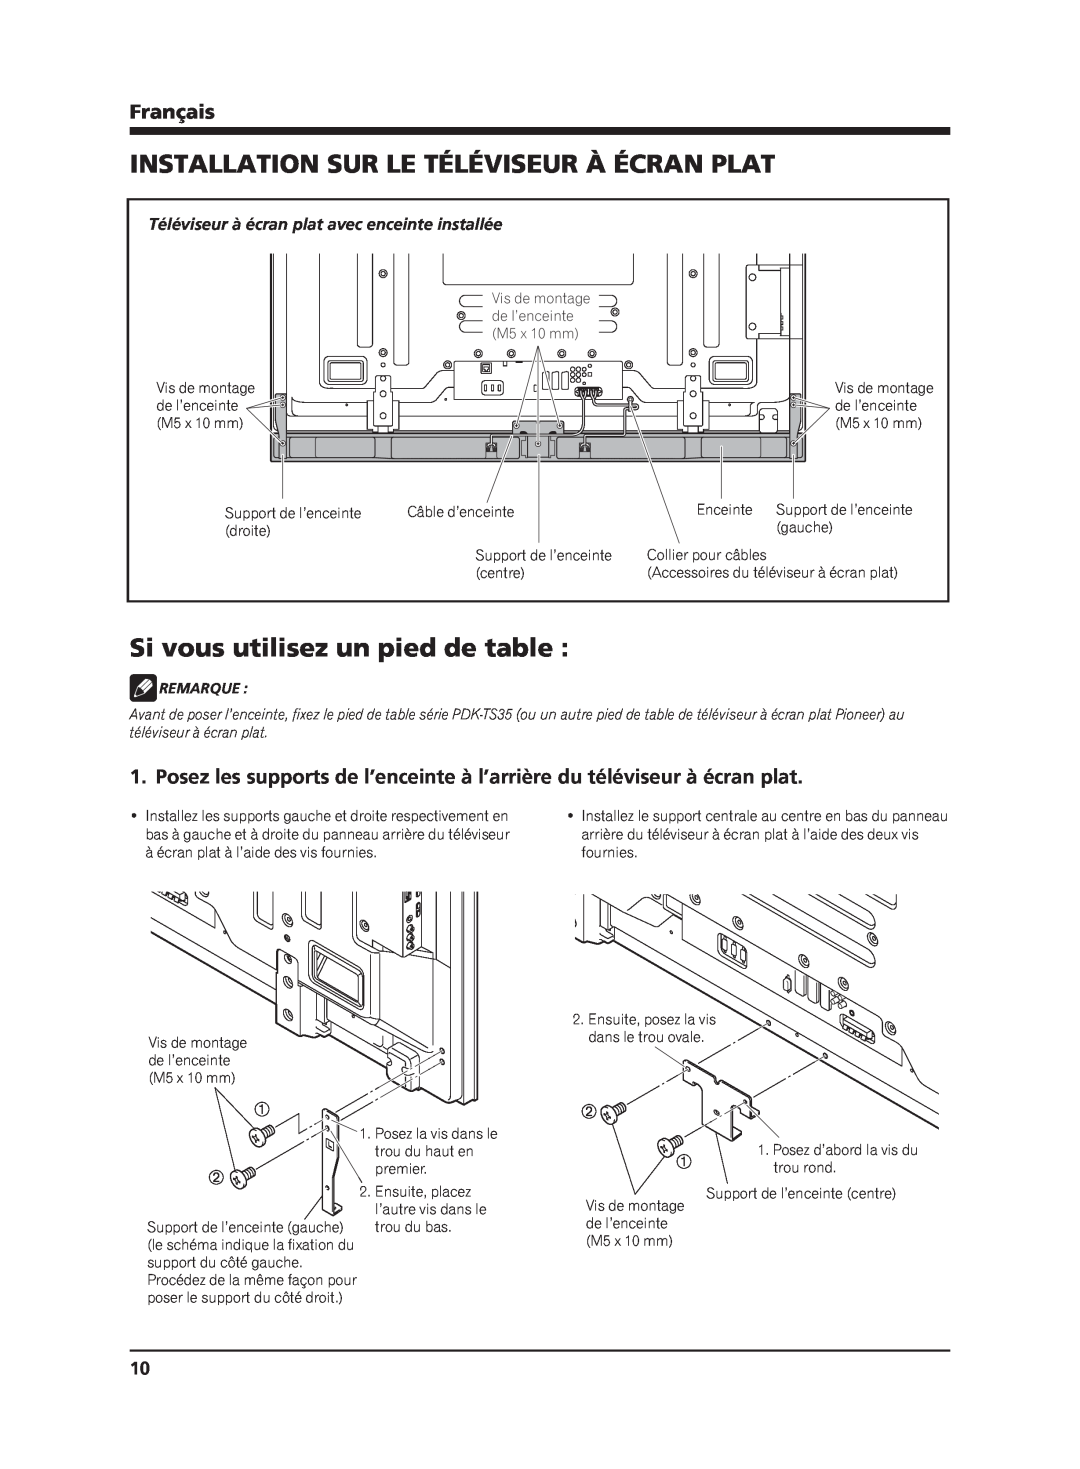 Pioneer PDP-S65 manual Installation Sur Le Téléviseur À Écran Plat, Si vous utilisez un pied de table, Français, Remarque 